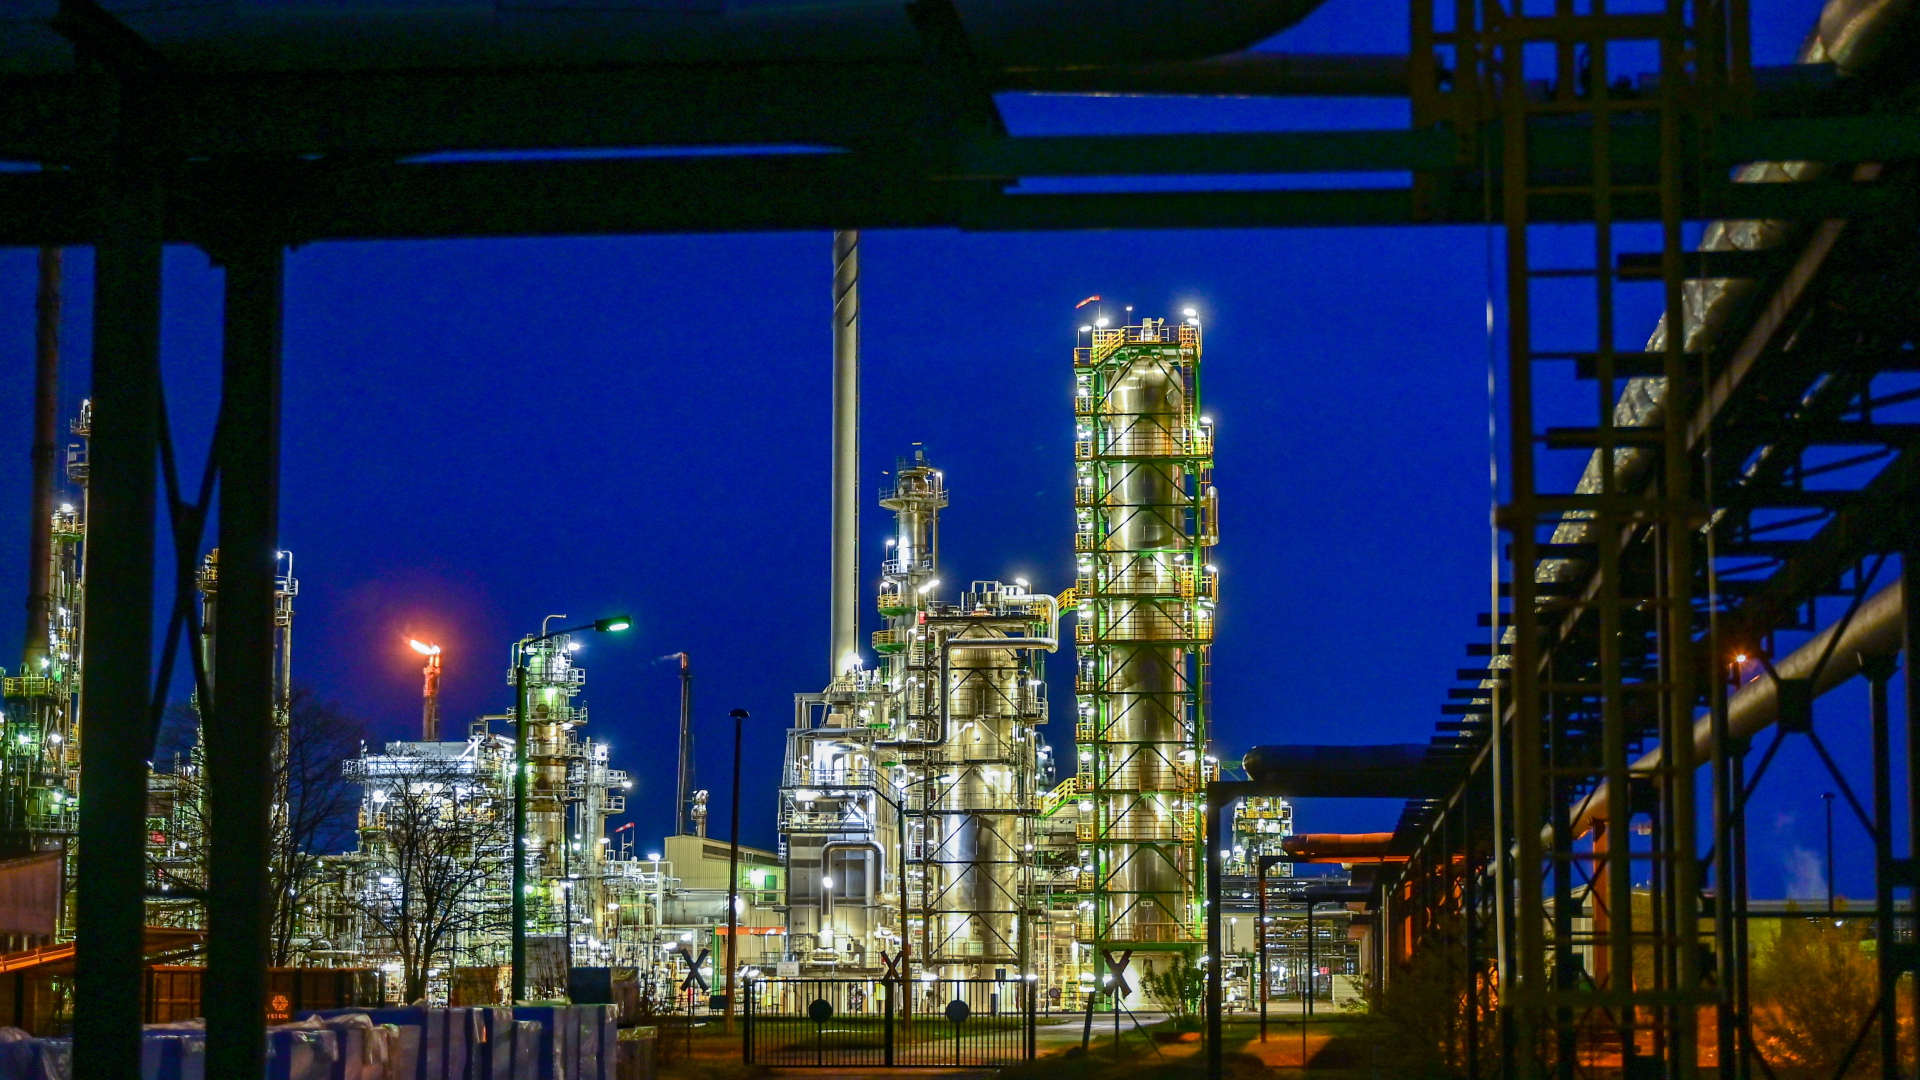 Die Anlagen der Erdölraffinerie auf dem Industriegelände der PCK-Raffinerie GmbH sind abends beleuchtet. | dpa